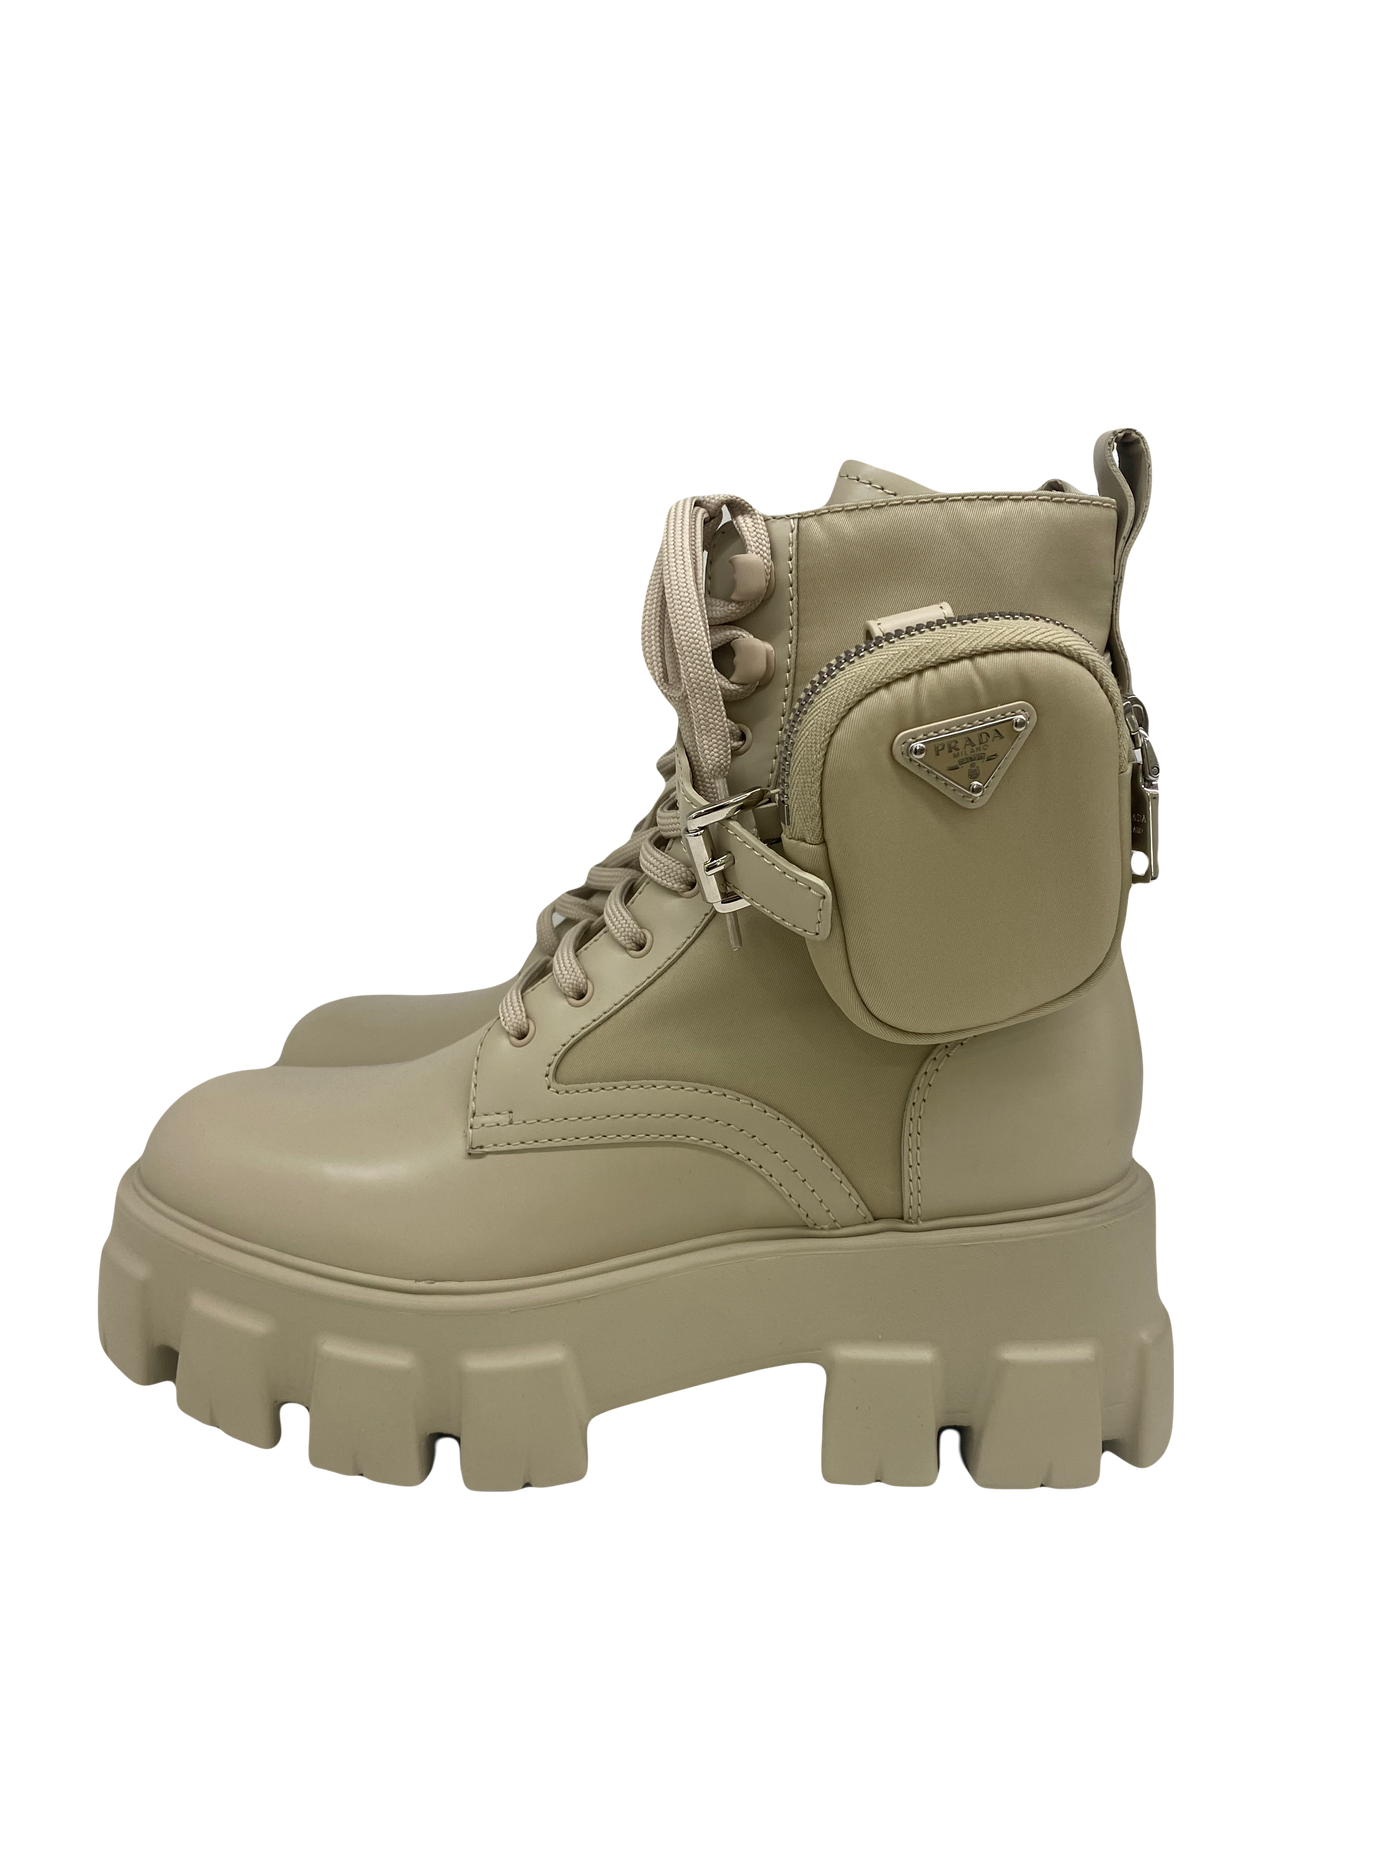 Prada Nylon Combat Boots size 39